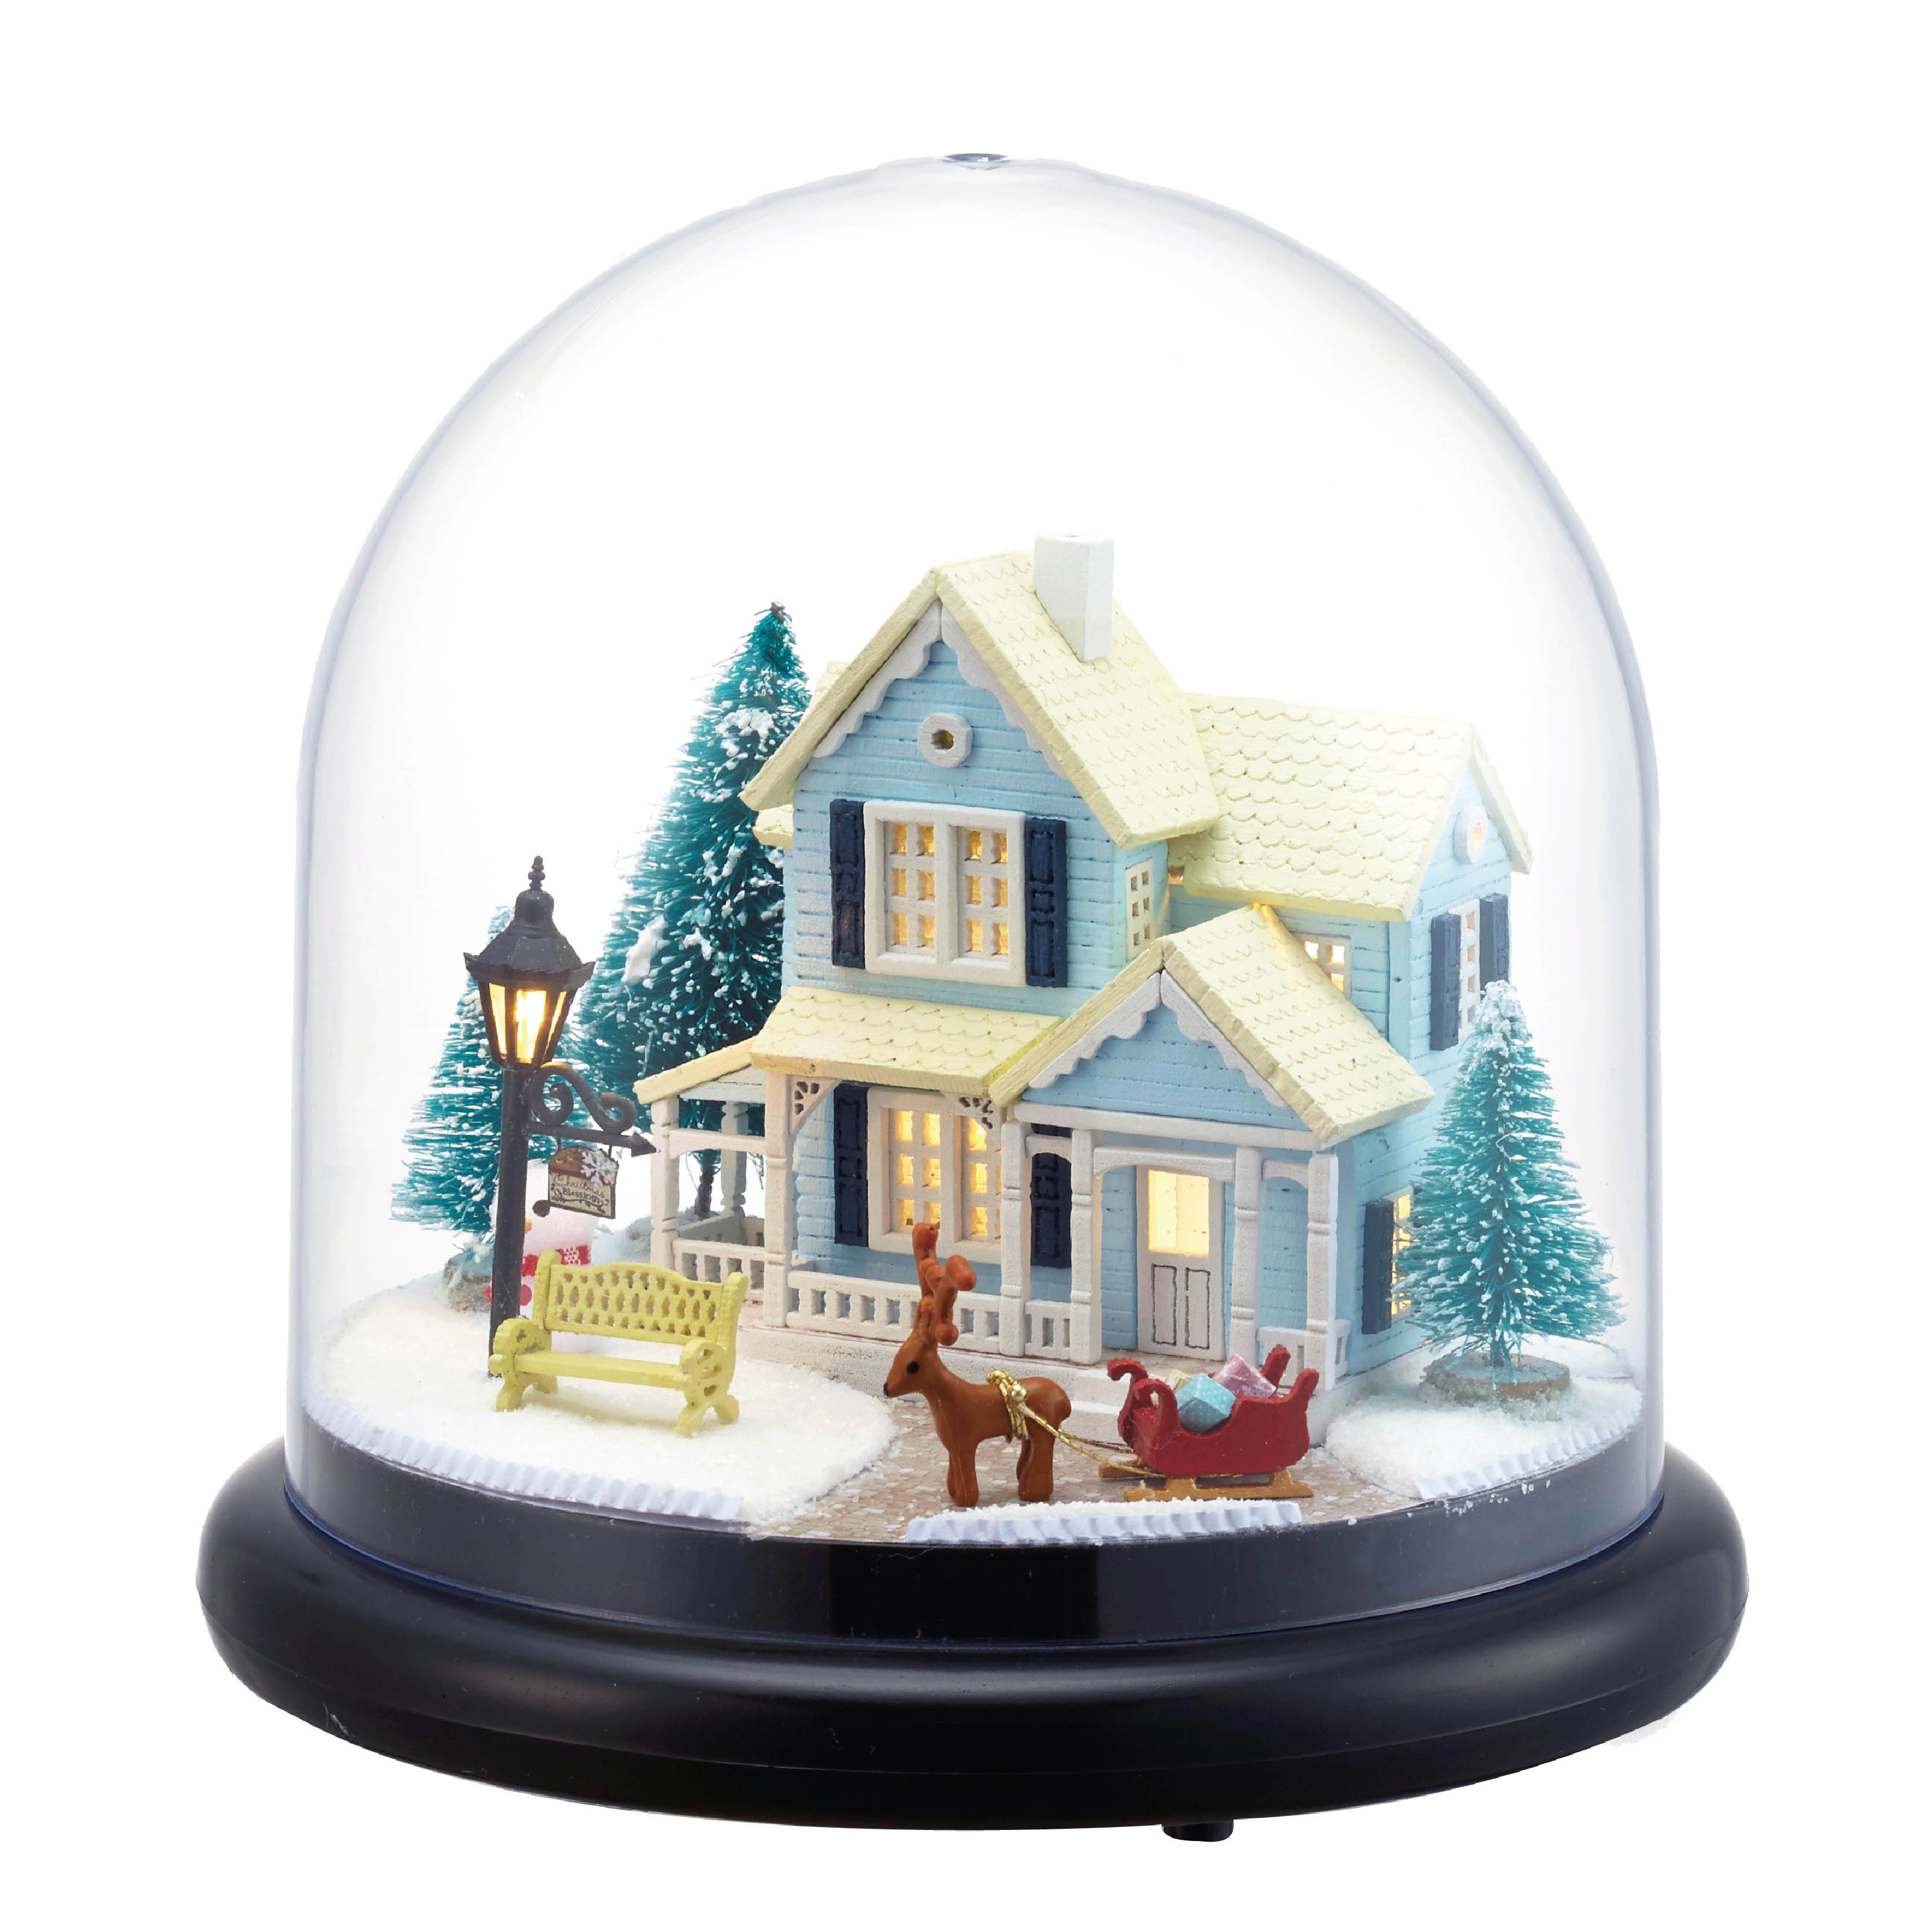 贝塔曼 diy小屋北欧童话手工制作场景玩具迷你小房子模型新年礼物